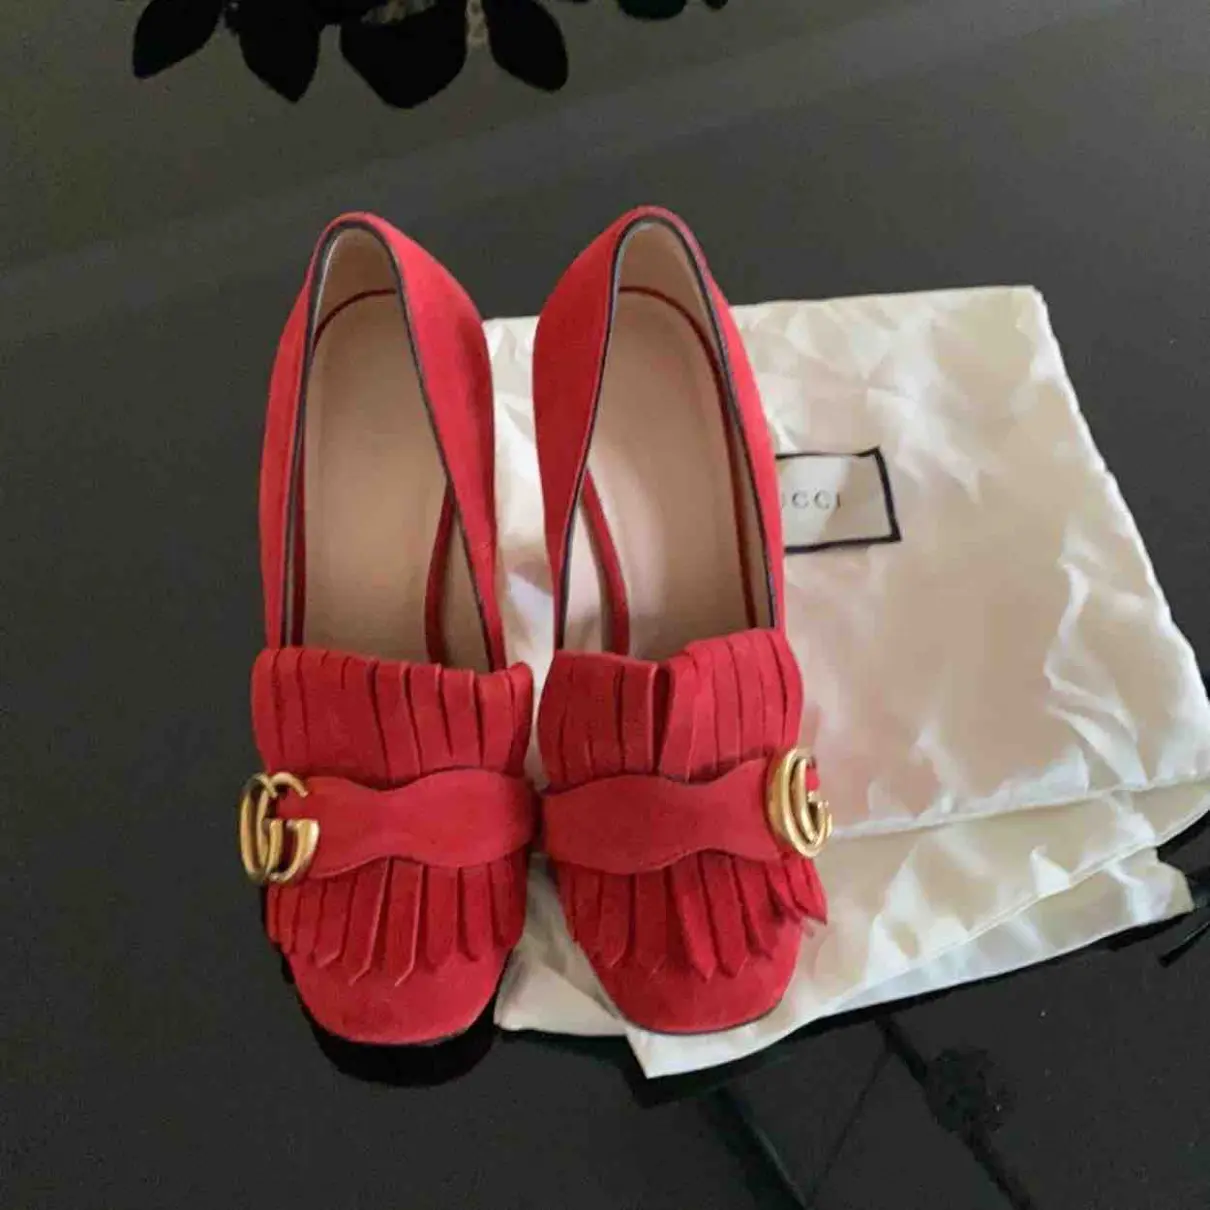 Buy Gucci Marmont heels online